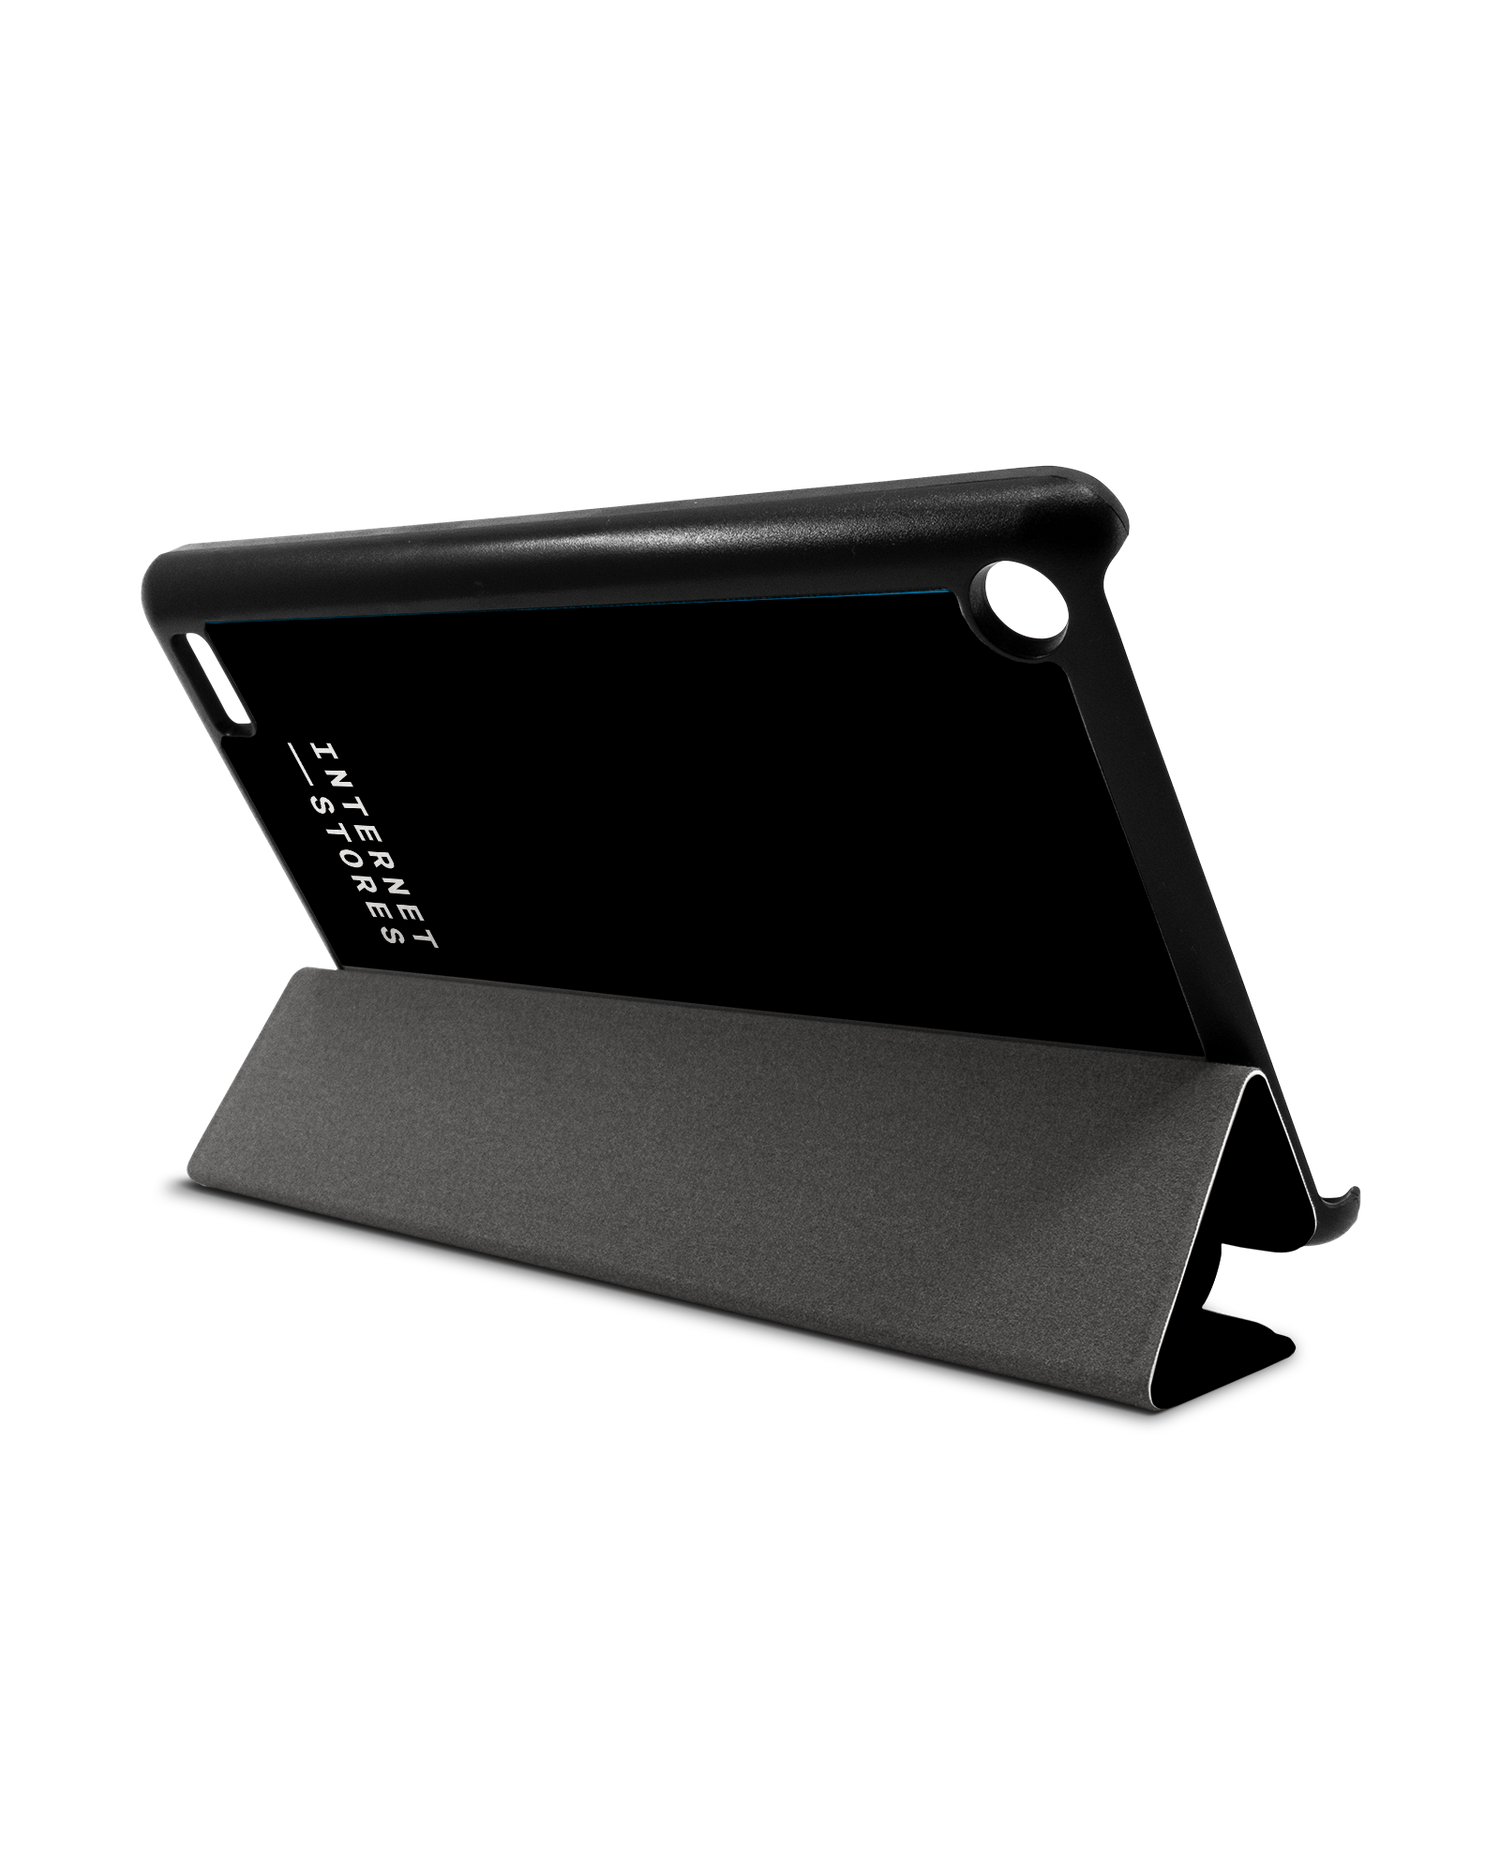 ISG Black Tablet Smart Case für Amazon Fire 7: Aufgestellt im Querformat